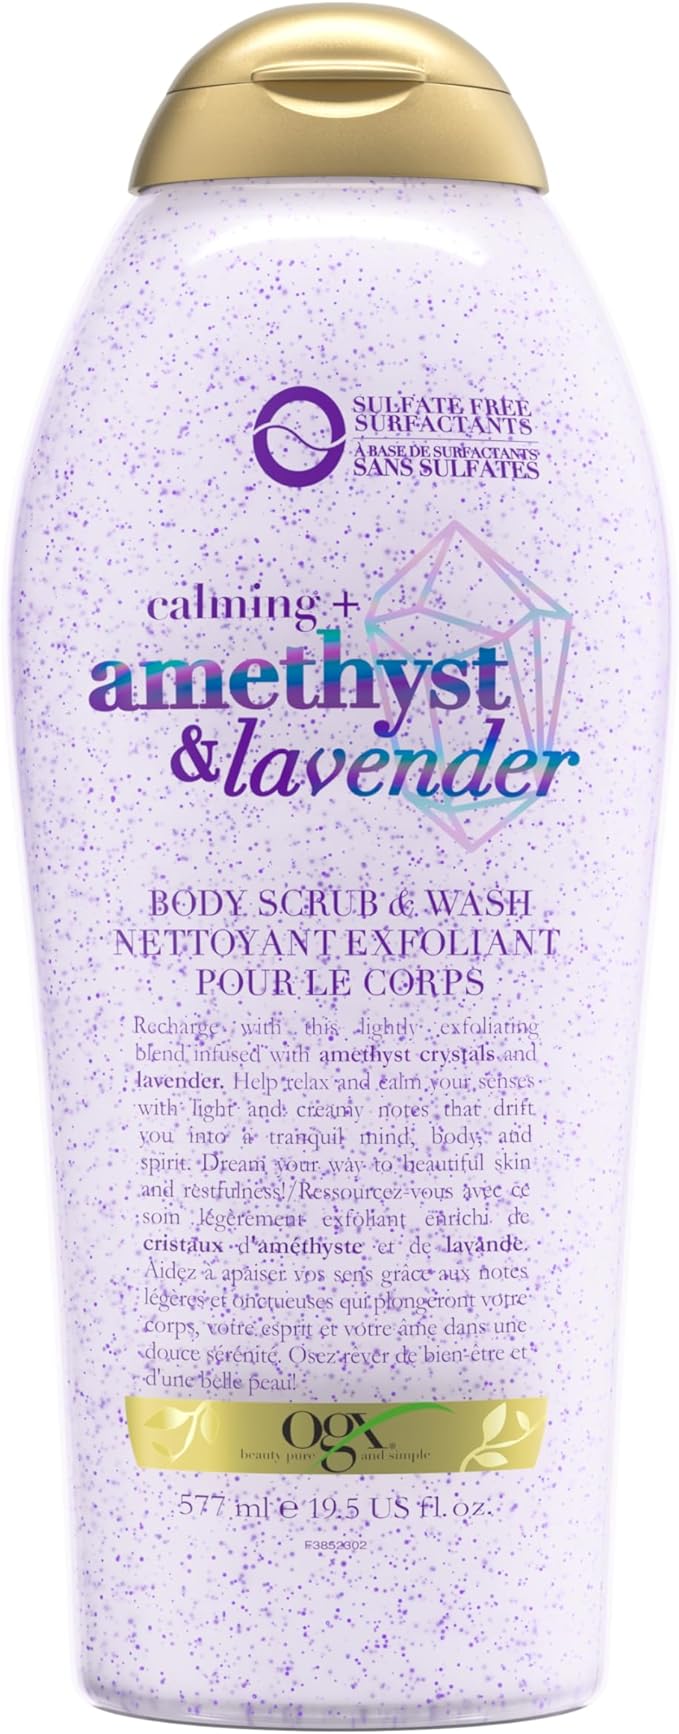 OGX Calming   Amethyst & Lavender Body Scrub & Wash, Gently Exfoliating, 19.5 fl oz